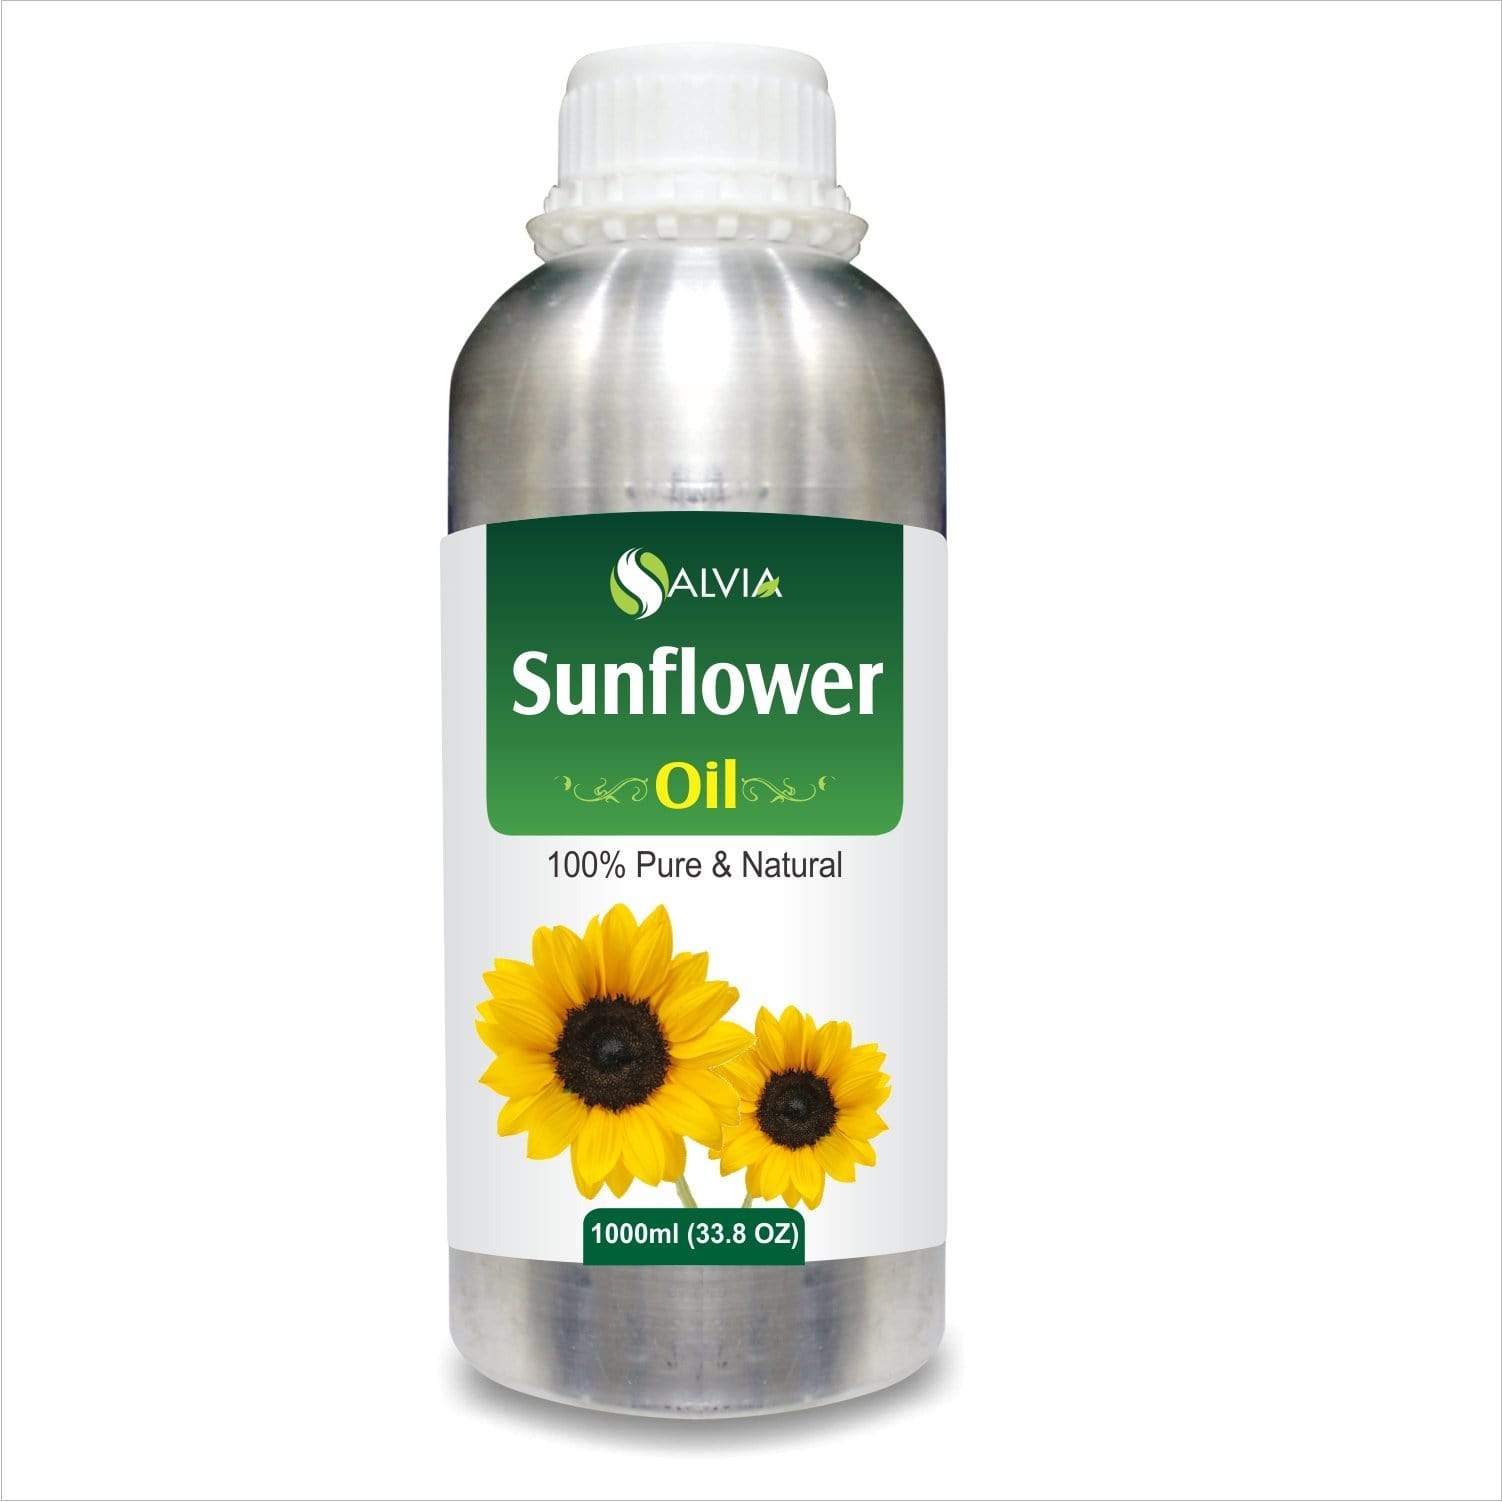  sunflower oil 15 ltr price